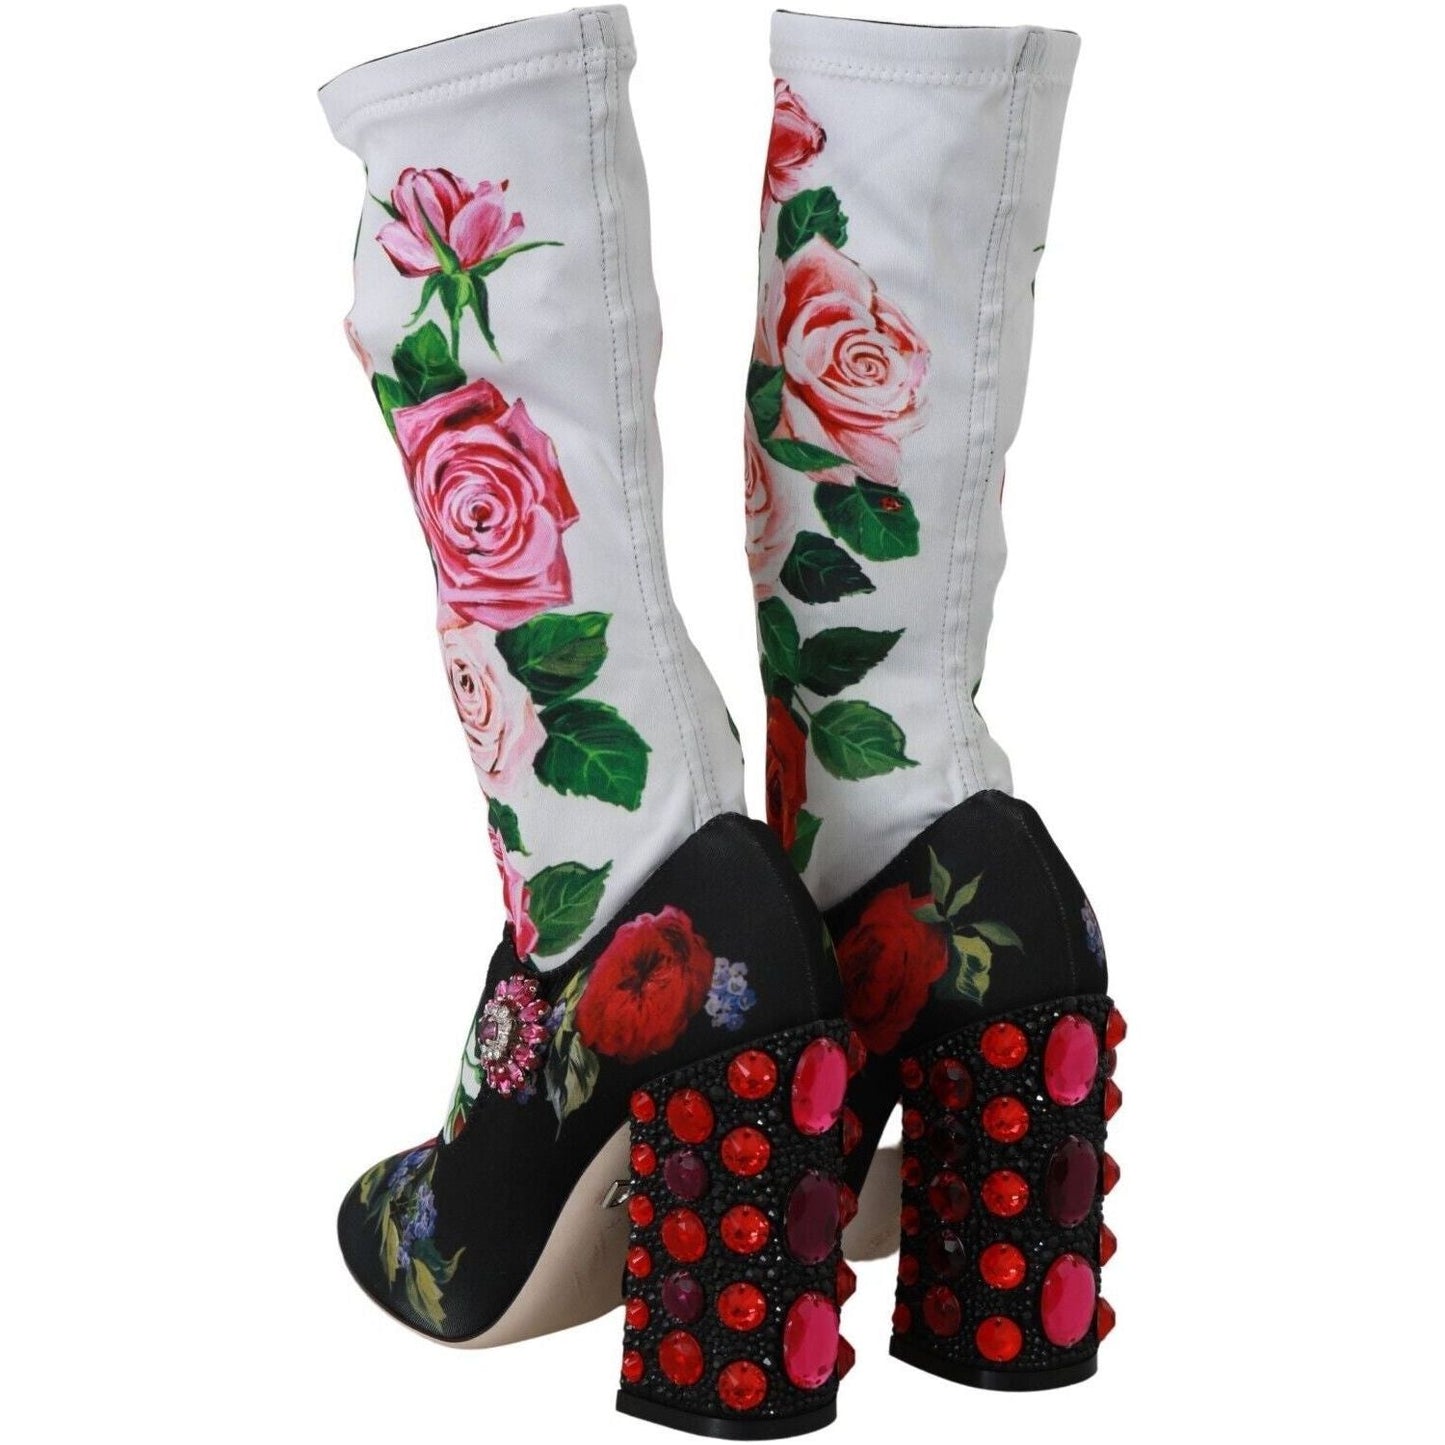 Dolce & Gabbana Floral Embellished Socks Boots black-floral-socks-crystal-jersey-boots-shoes